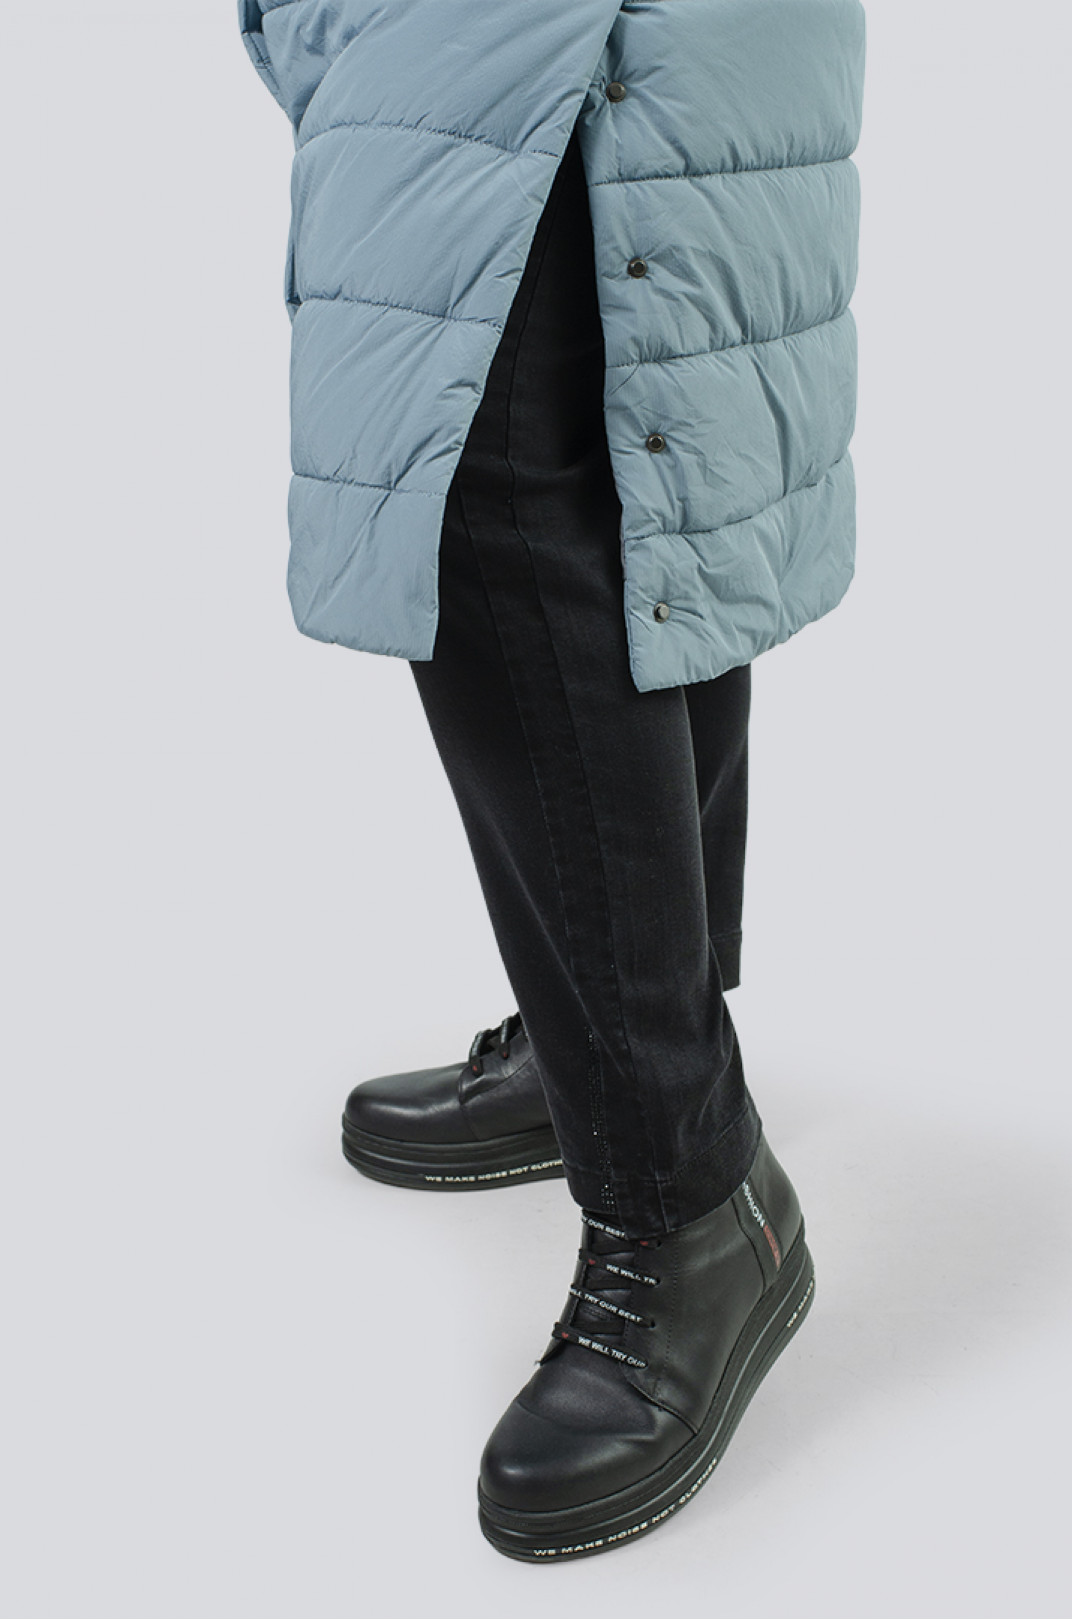 Теплое стеганное пальто синтепух с двойным капюшоном супер батал